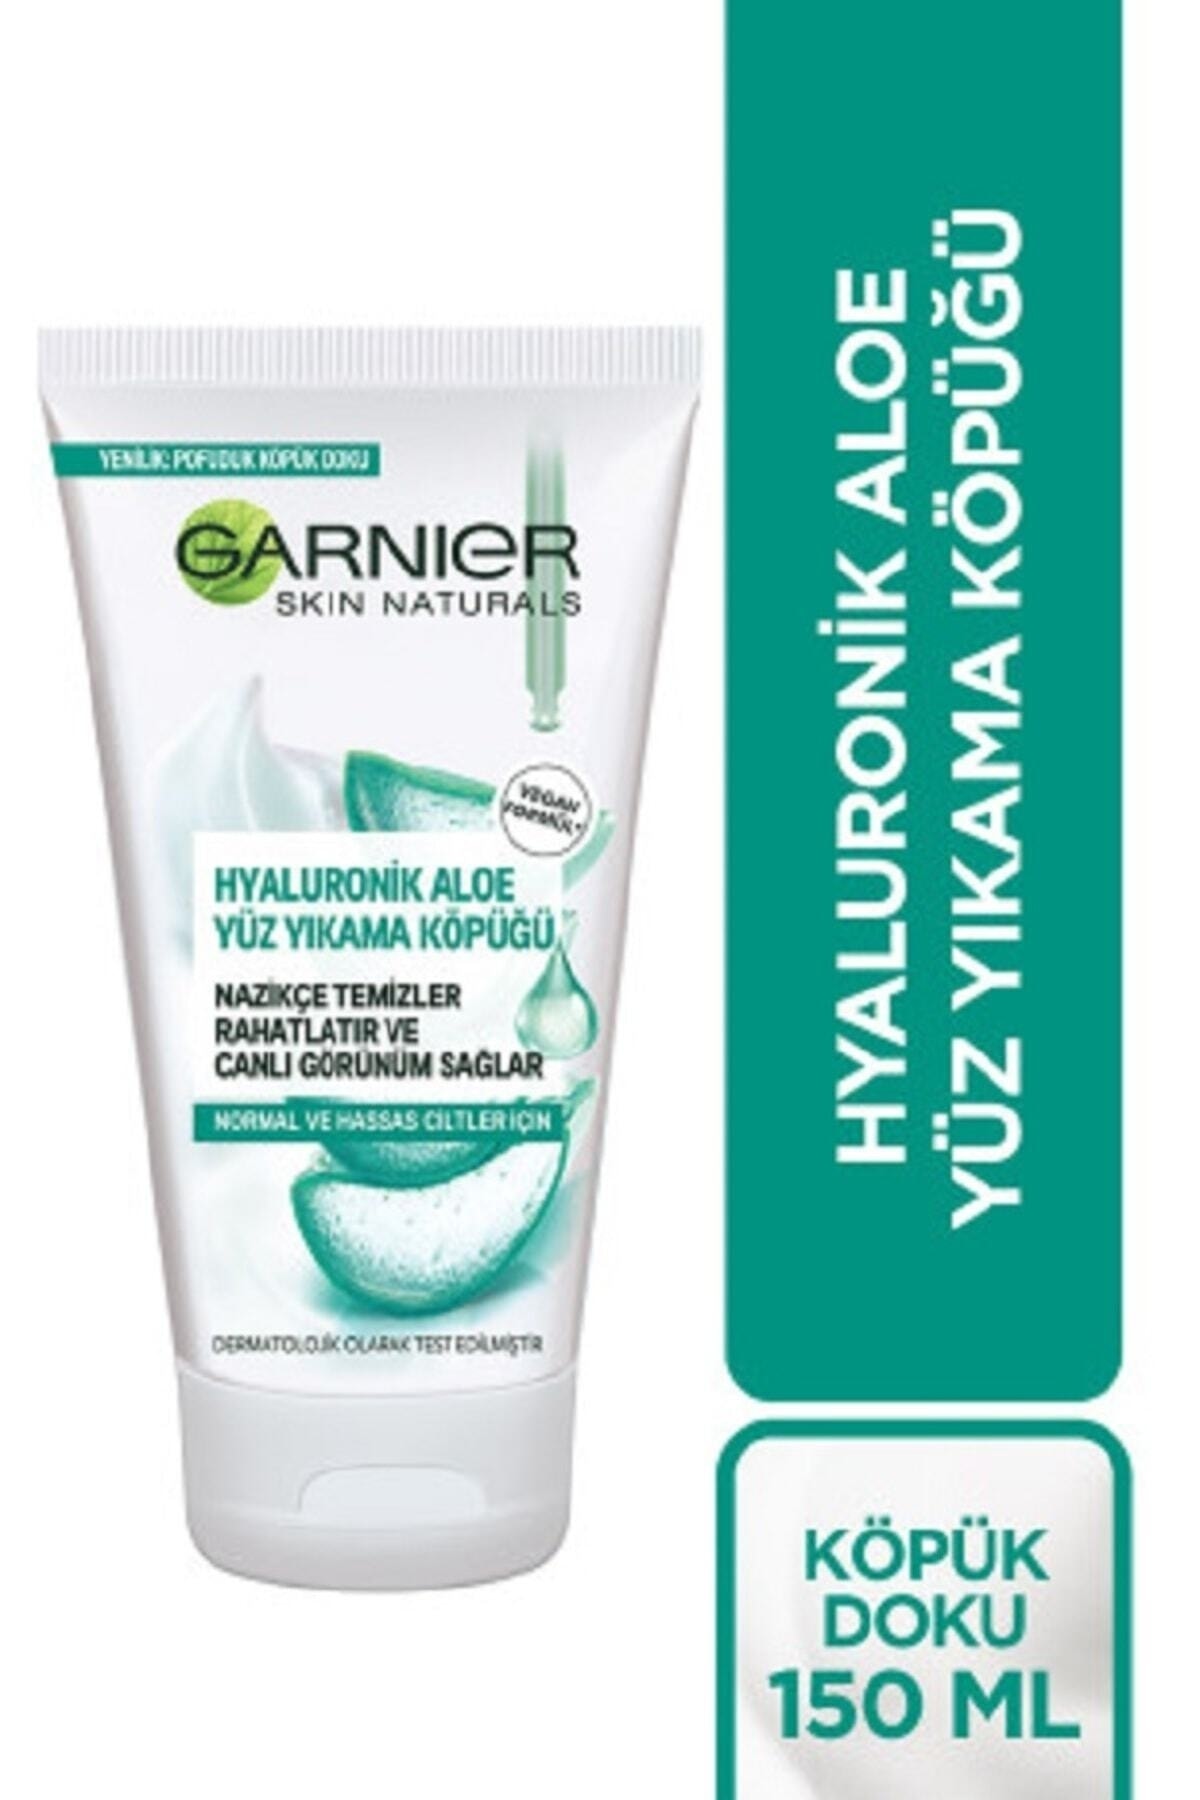 Garnier Hyaluronik Aloe Yüz Yıkama Ve Süper Canlandırma Köpüğü 150_ml.,